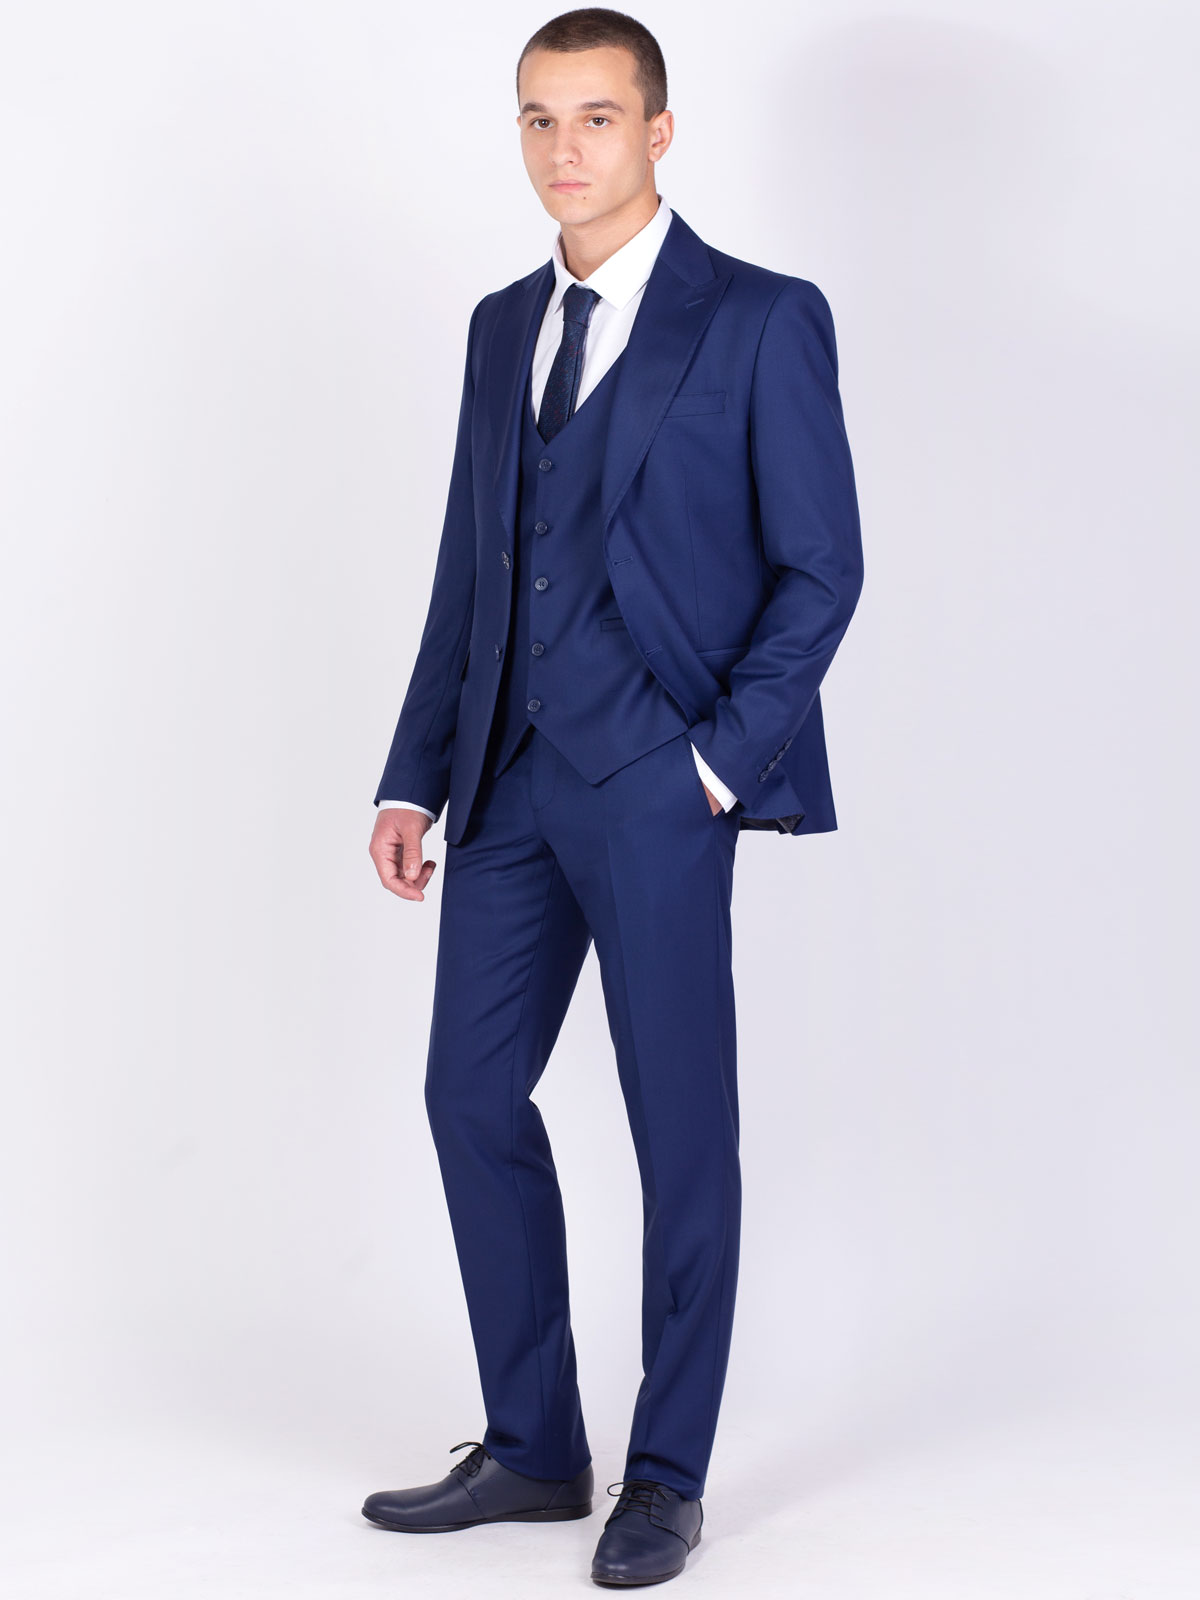 Κλασικό παντελόνι σε μπλε χρώμα - 63330 € 60.74 img2